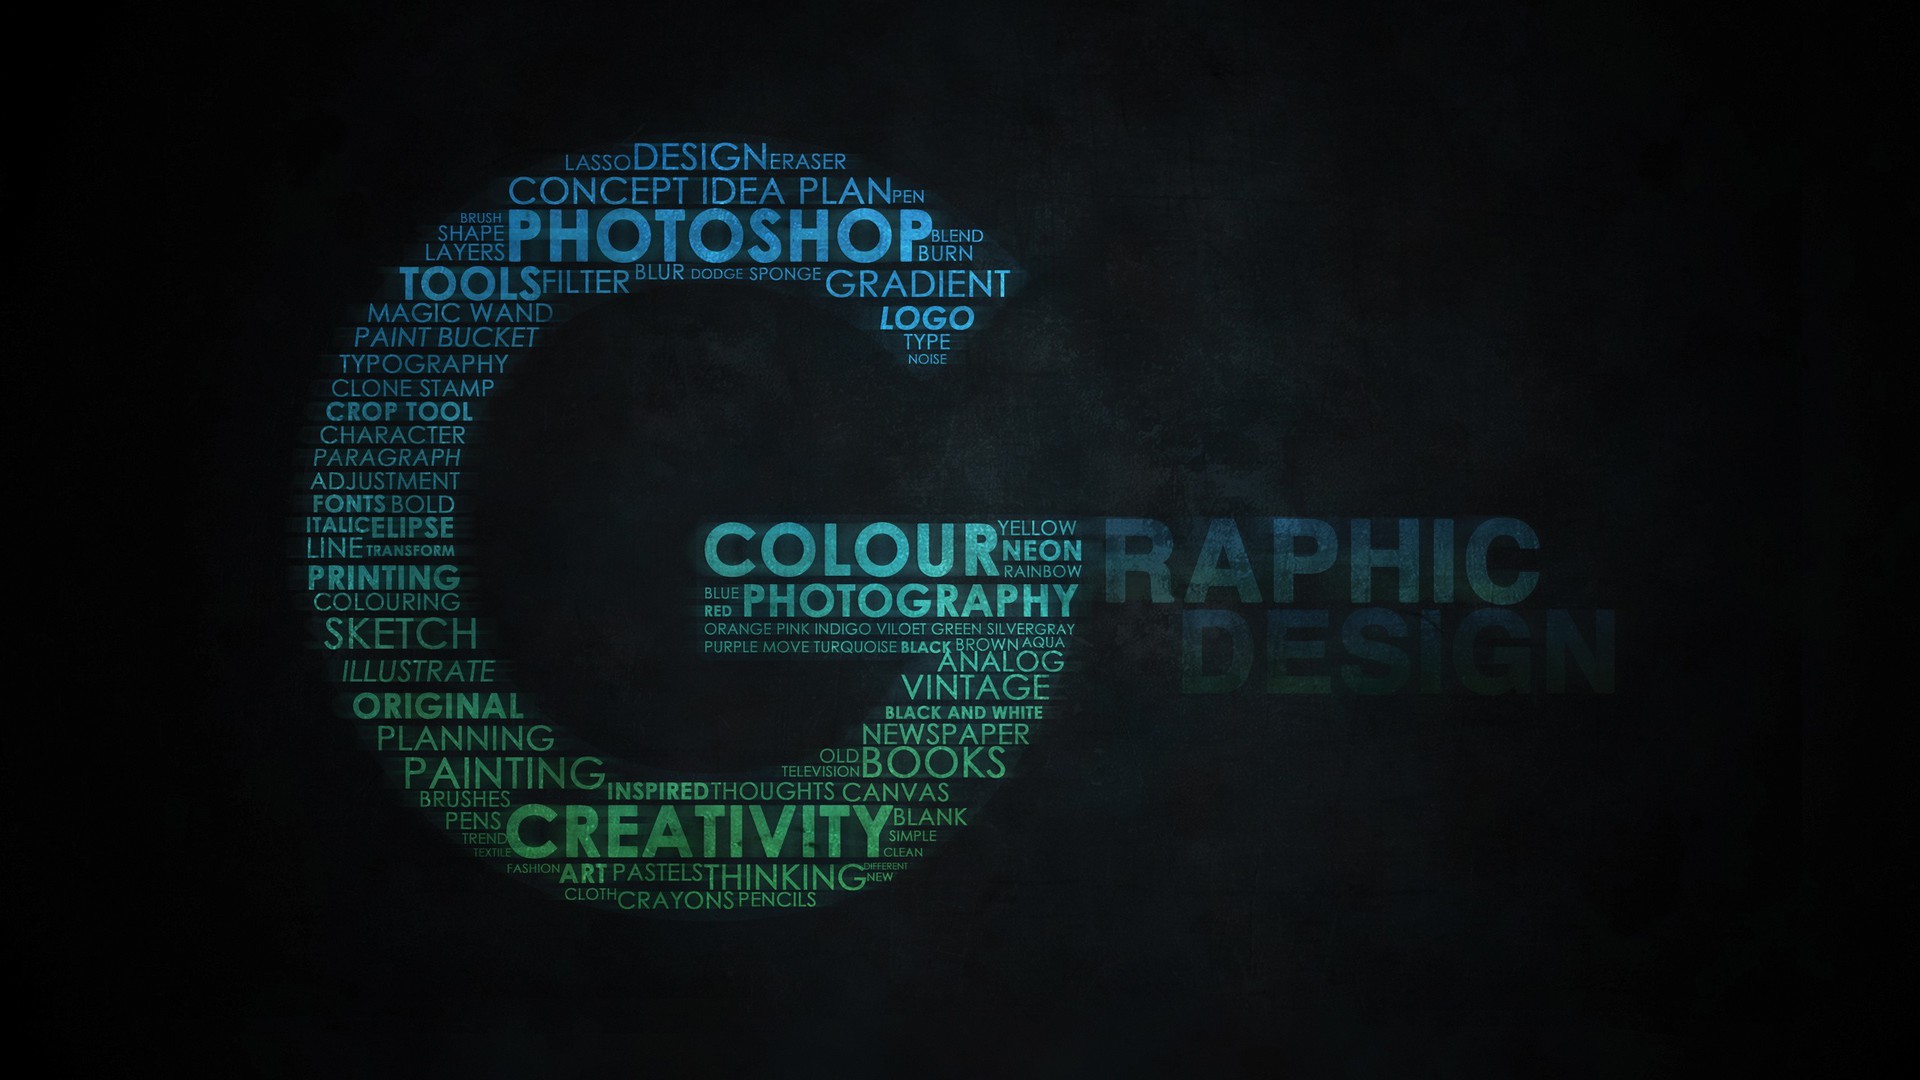 graphic design 1